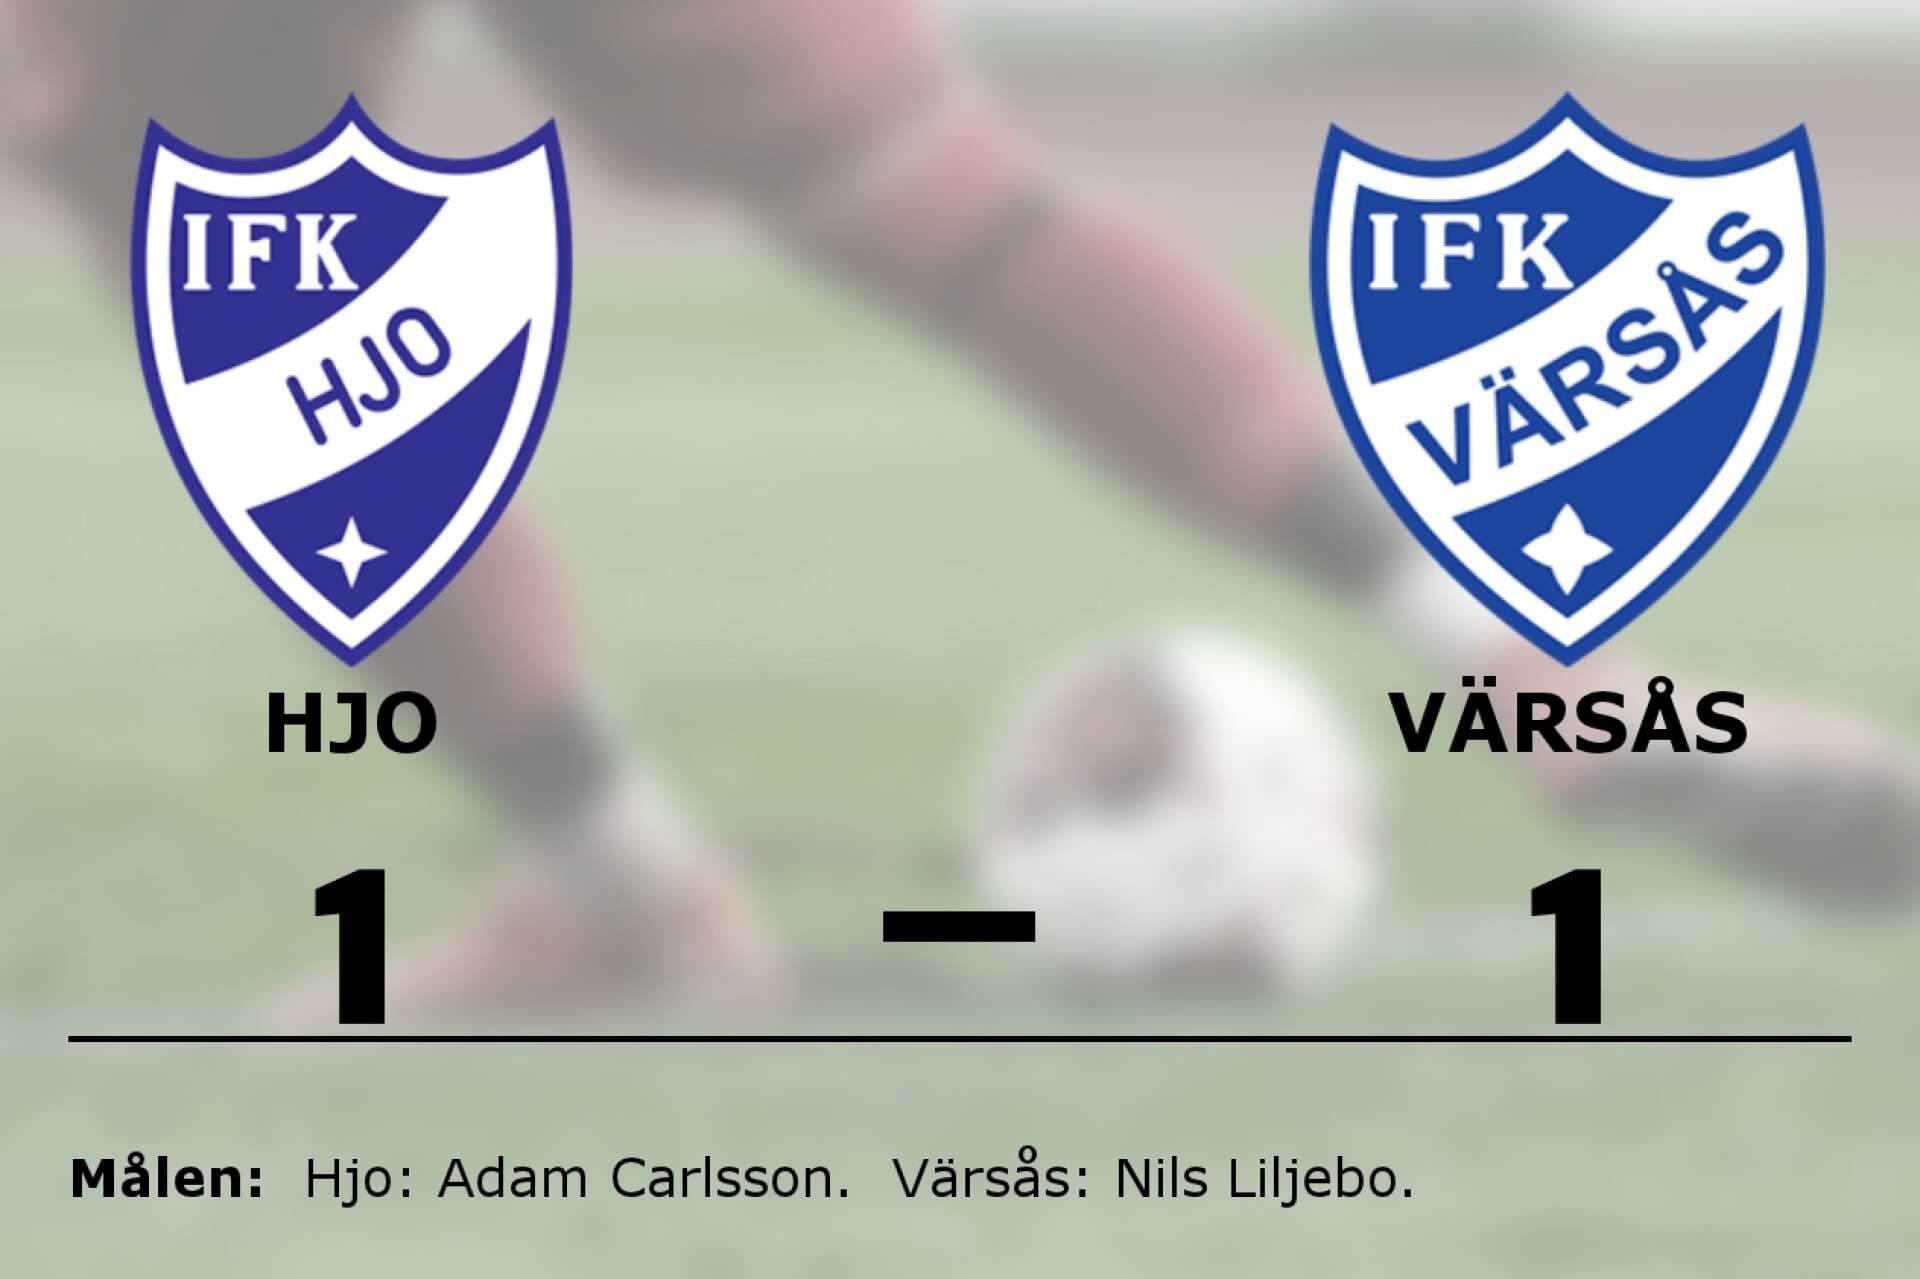 IFK Hjo spelade lika mot IFK Värsås